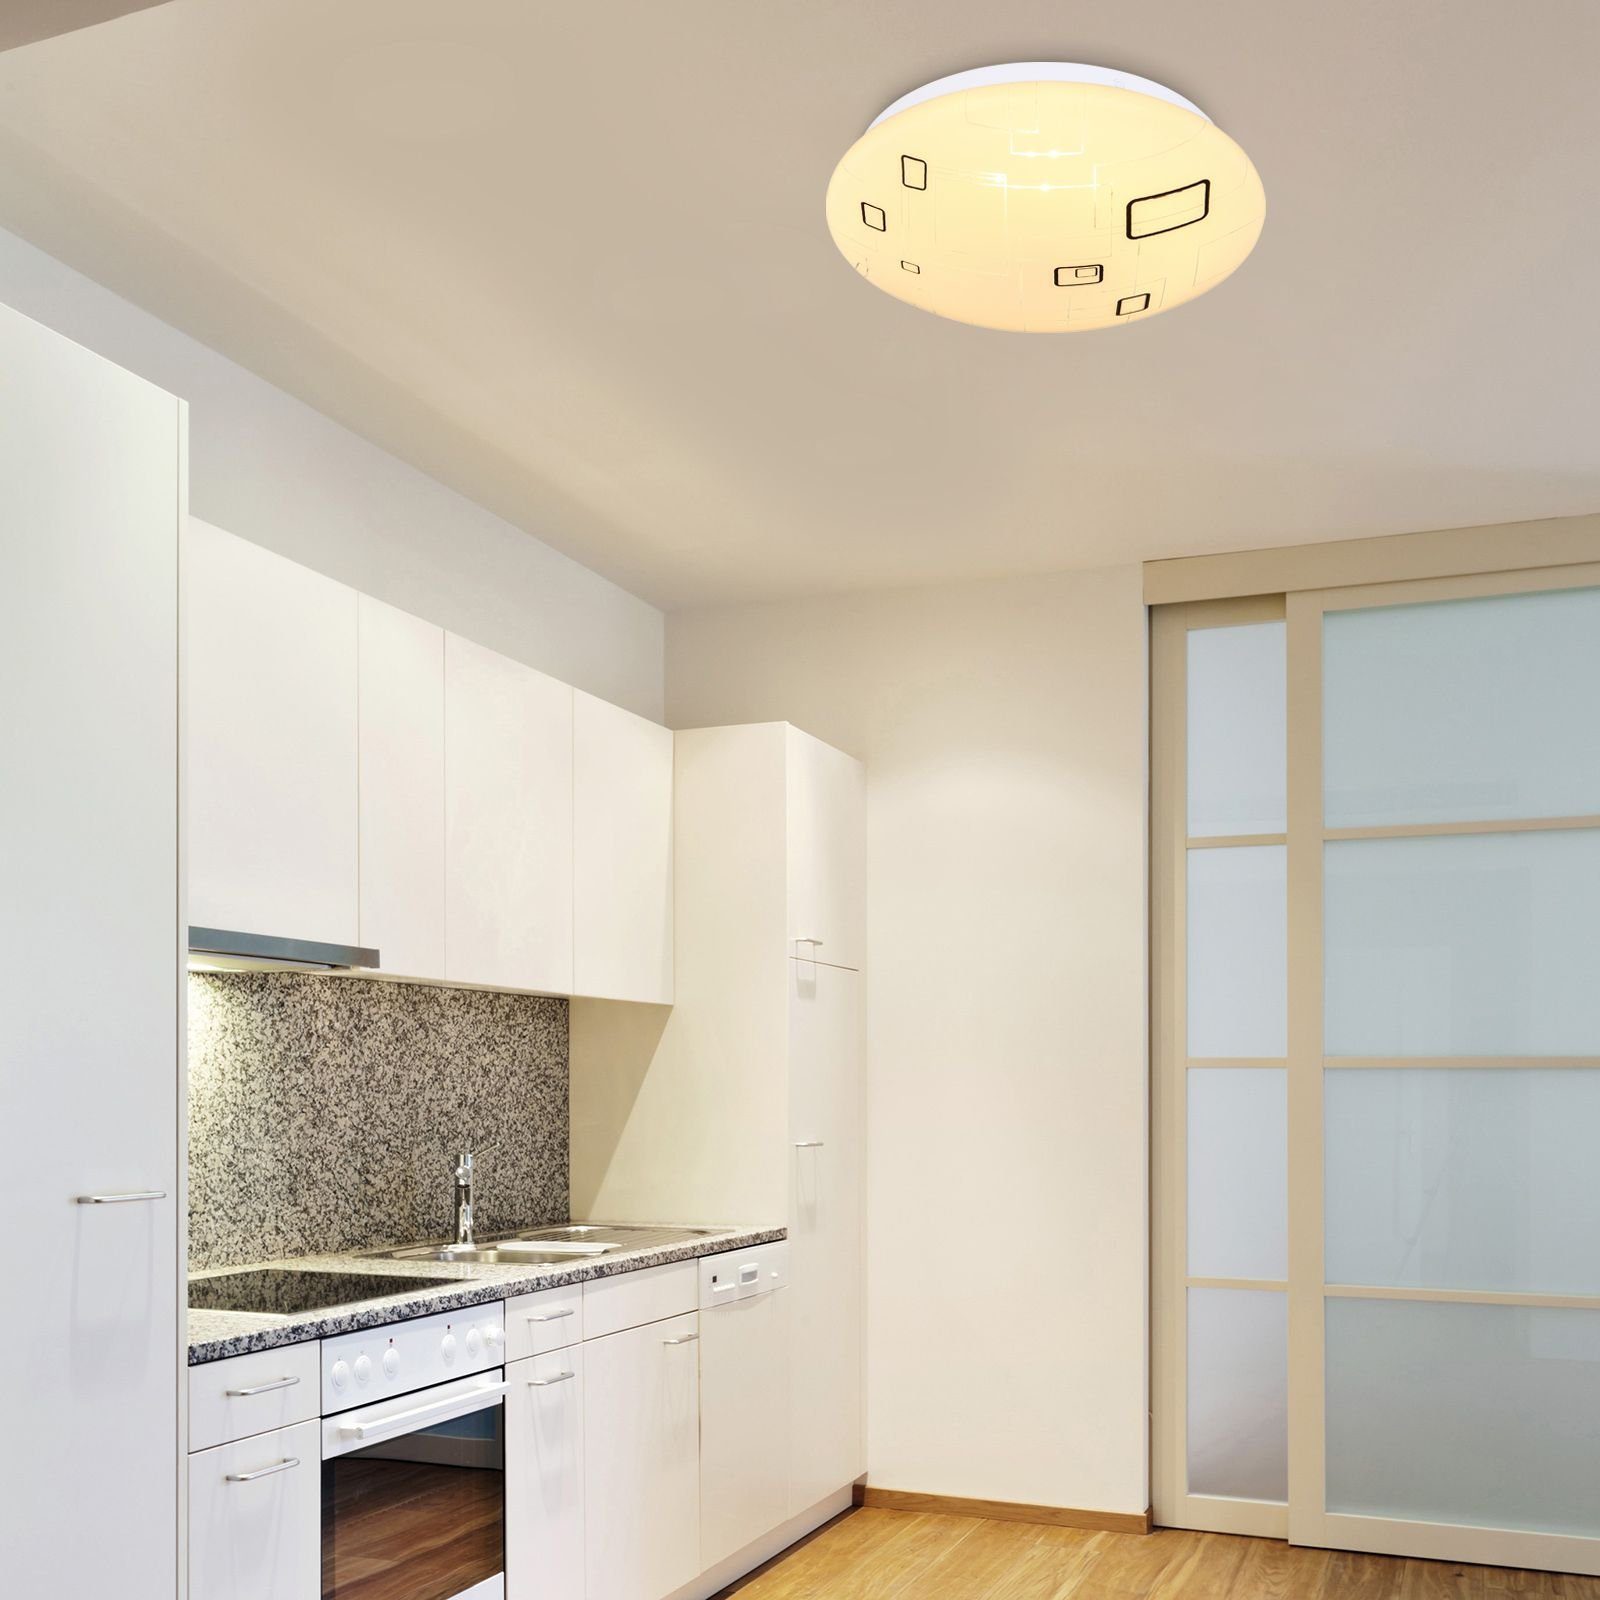 Globo Deckenleuchte GLOBO Deckenleuchte Küche cm Flur Deckenlampe Wohnzimmer 26 Bad LED